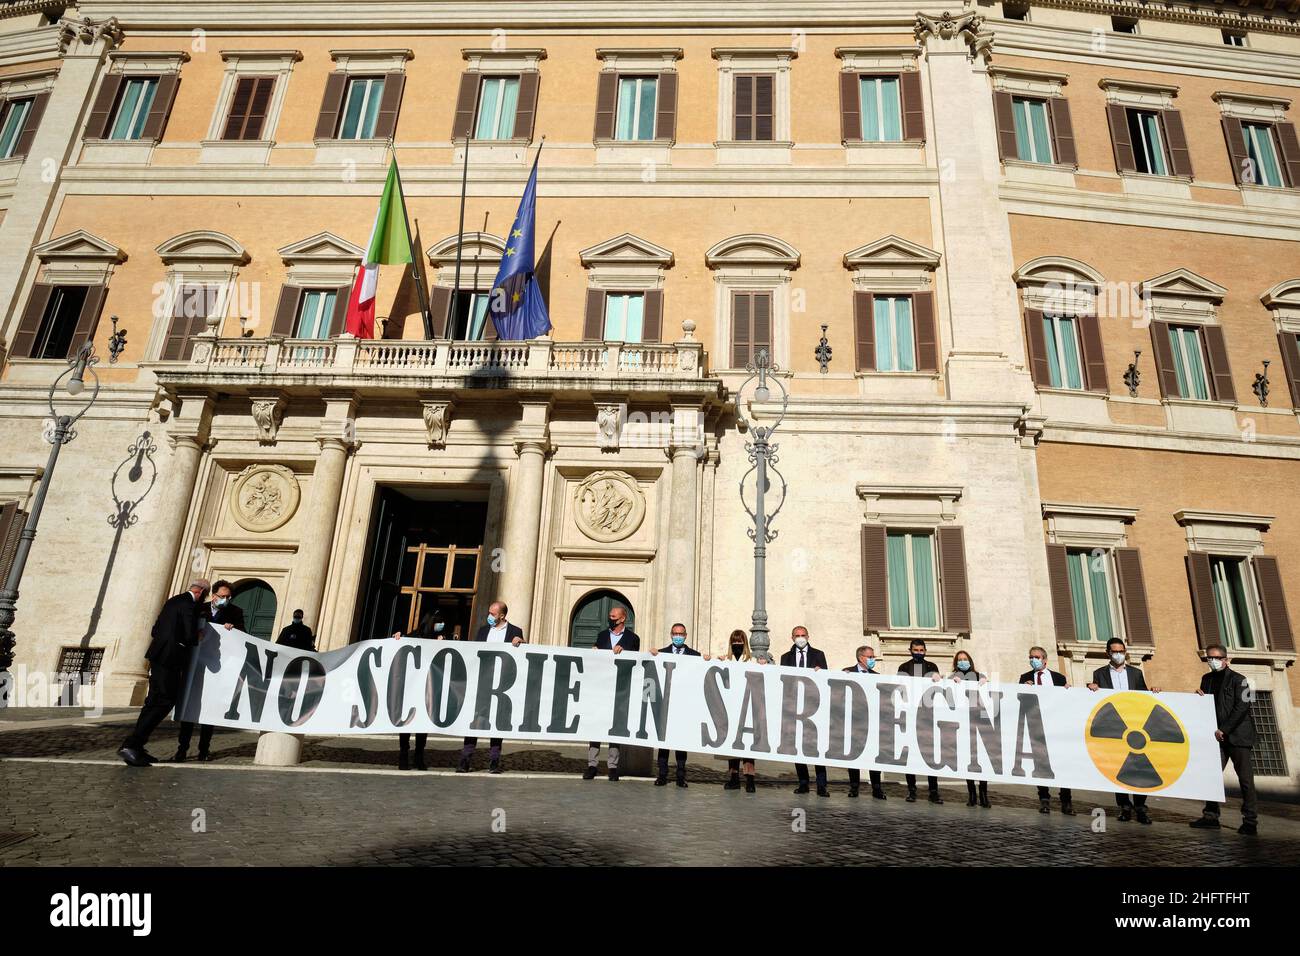 Mauro Scribogna /LaPresse January 13, 2021&#xa0; Roma, Italia Notizie nucleo - protesta partamentari della Sardegna Foto Stock